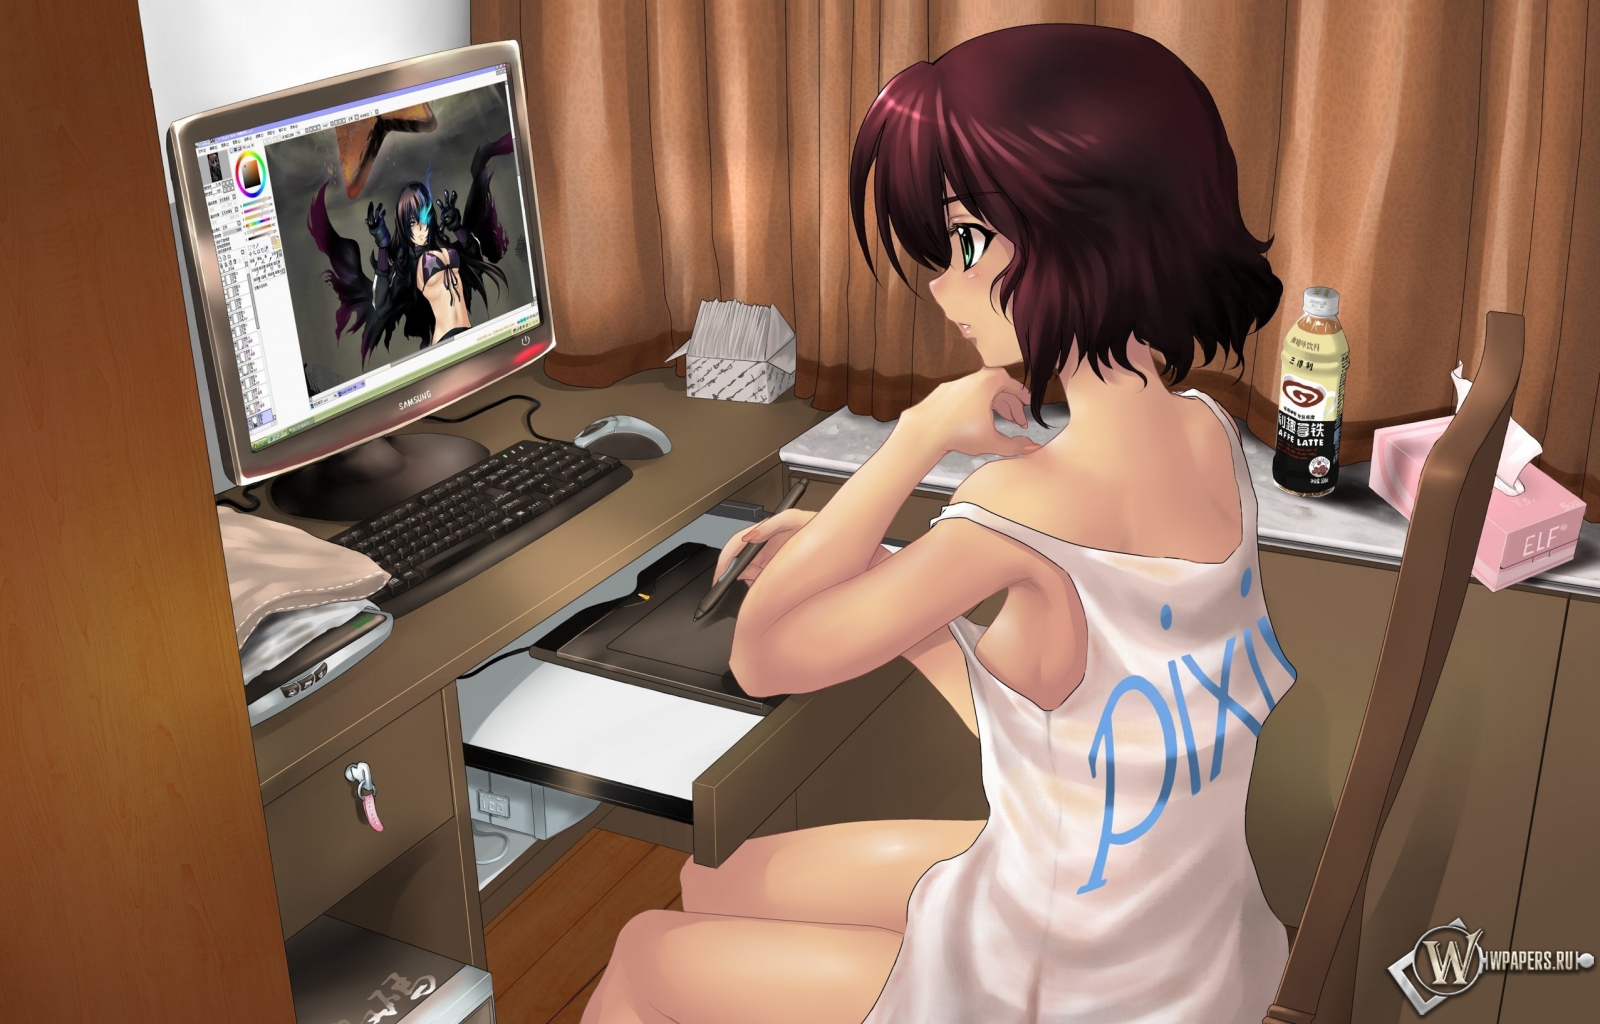 Девушка рисует за компьютером 1600x1024